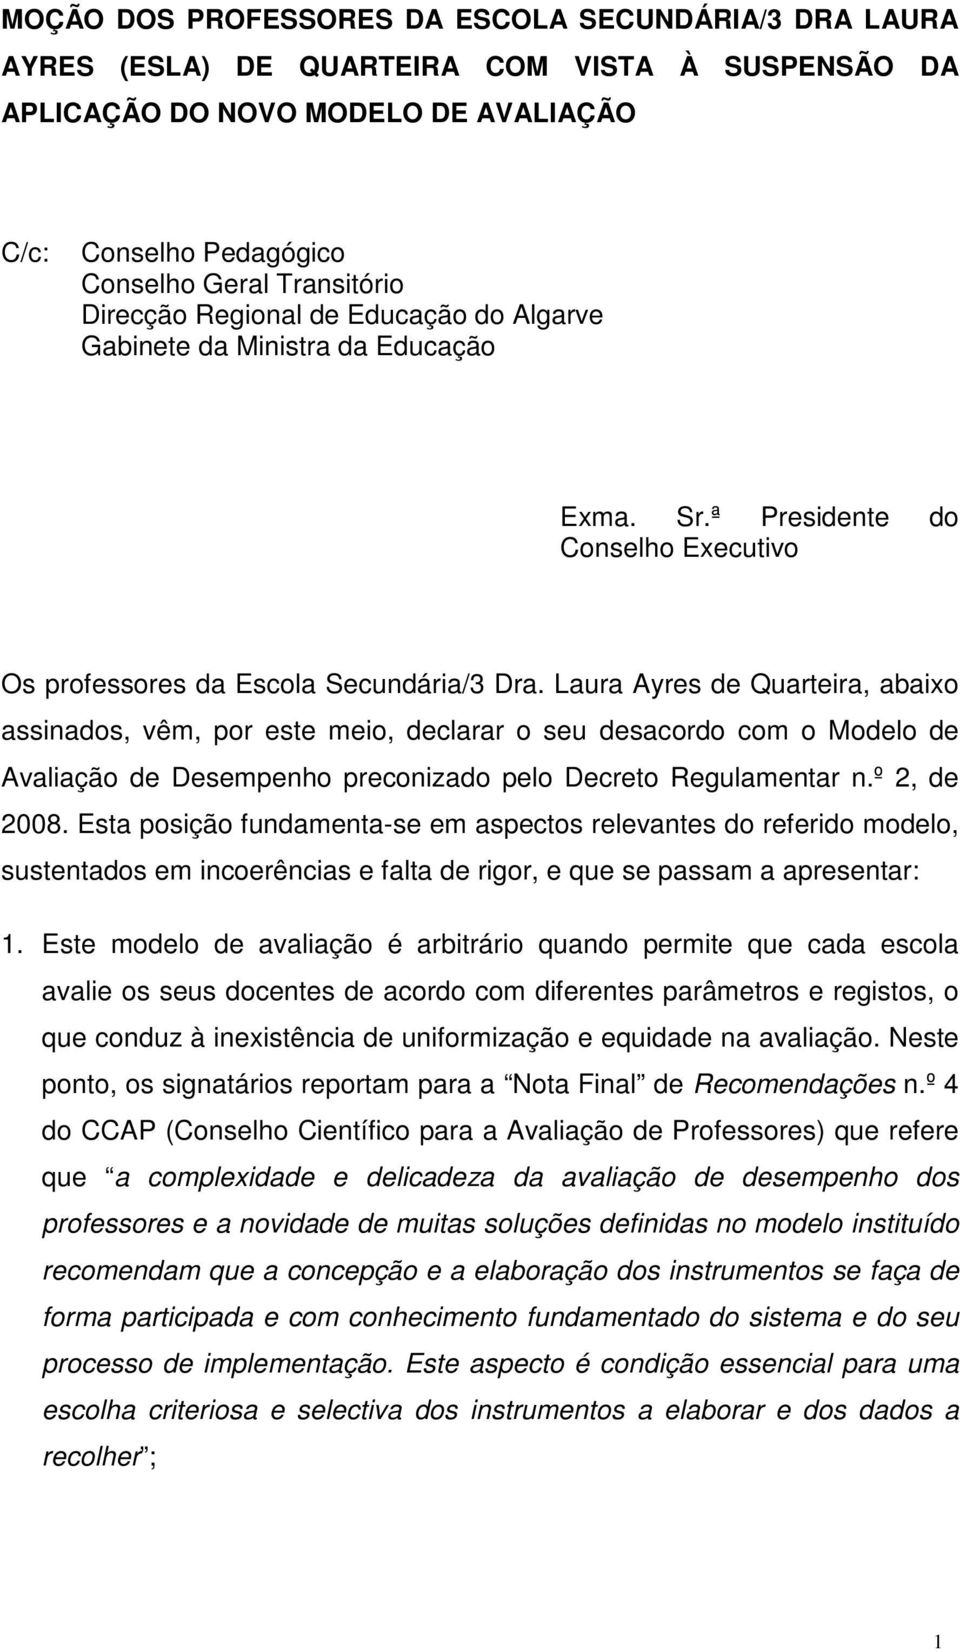 Laura Ayres de Quarteira, abaixo assinados, vêm, por este meio, declarar o seu desacordo com o Modelo de Avaliação de Desempenho preconizado pelo Decreto Regulamentar n.º 2, de 2008.